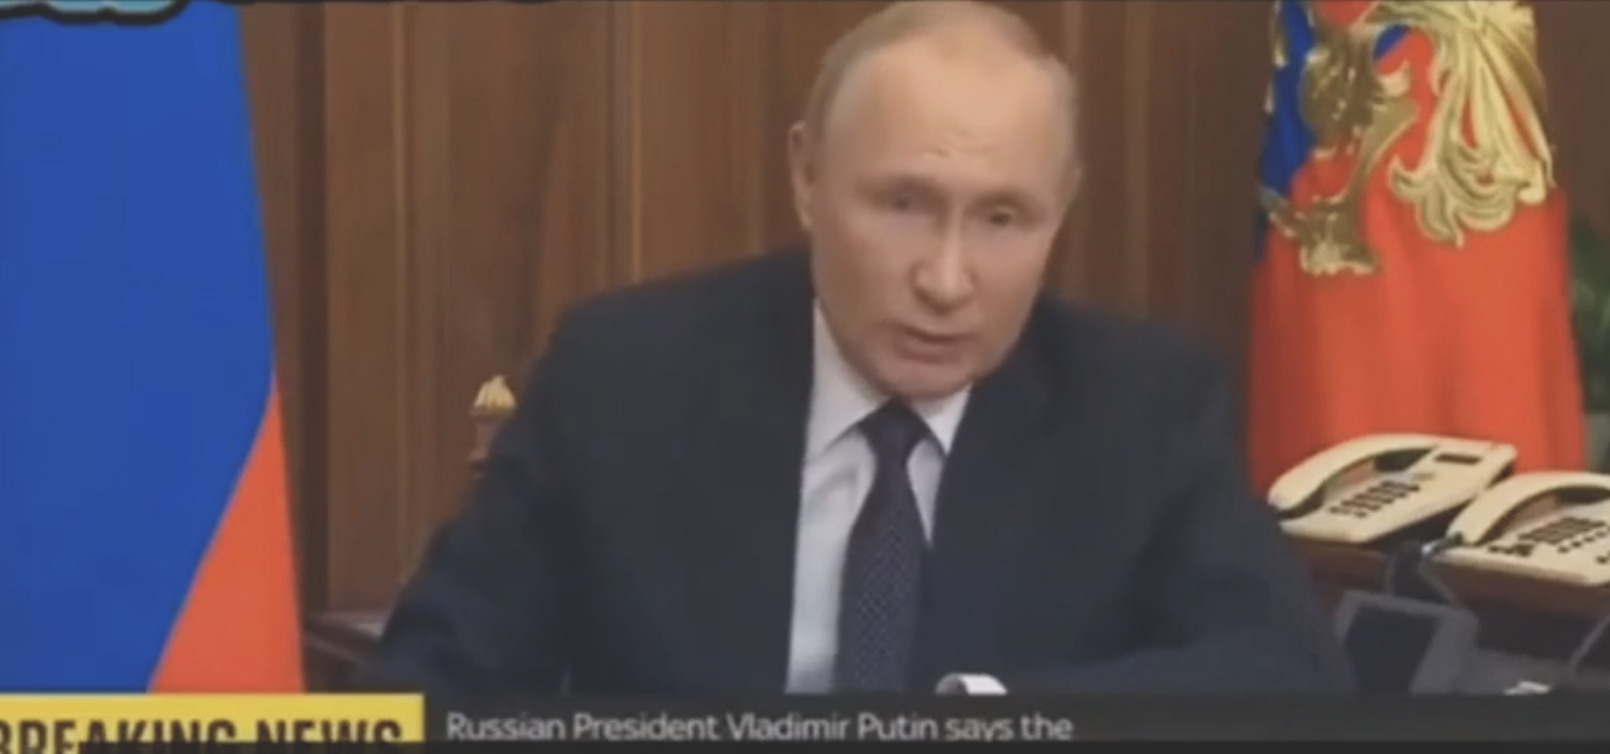 Η απάντηση του Πούτιν στις επιθέσεις του αγωγού: «Δεν είμαι εναντίον των πολιτών της Ευρώπης, είναι οι ηγέτες σας που είναι εναντίον των πολιτών της Ευρώπης»